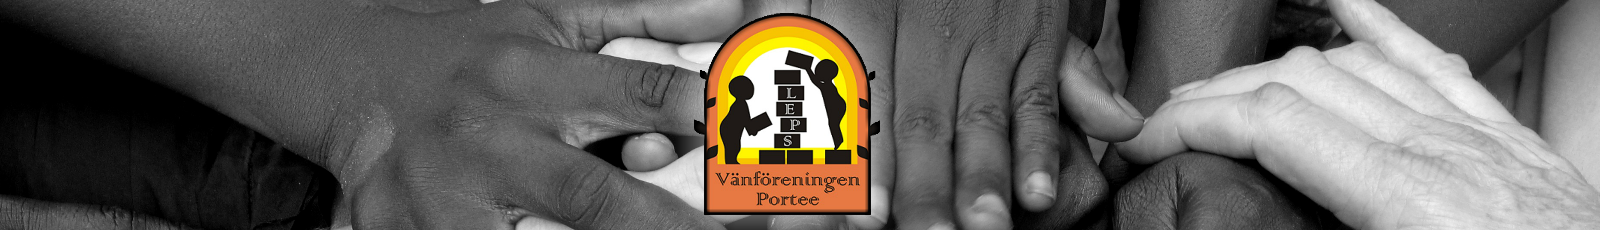 Vänföreningen Portee Logo